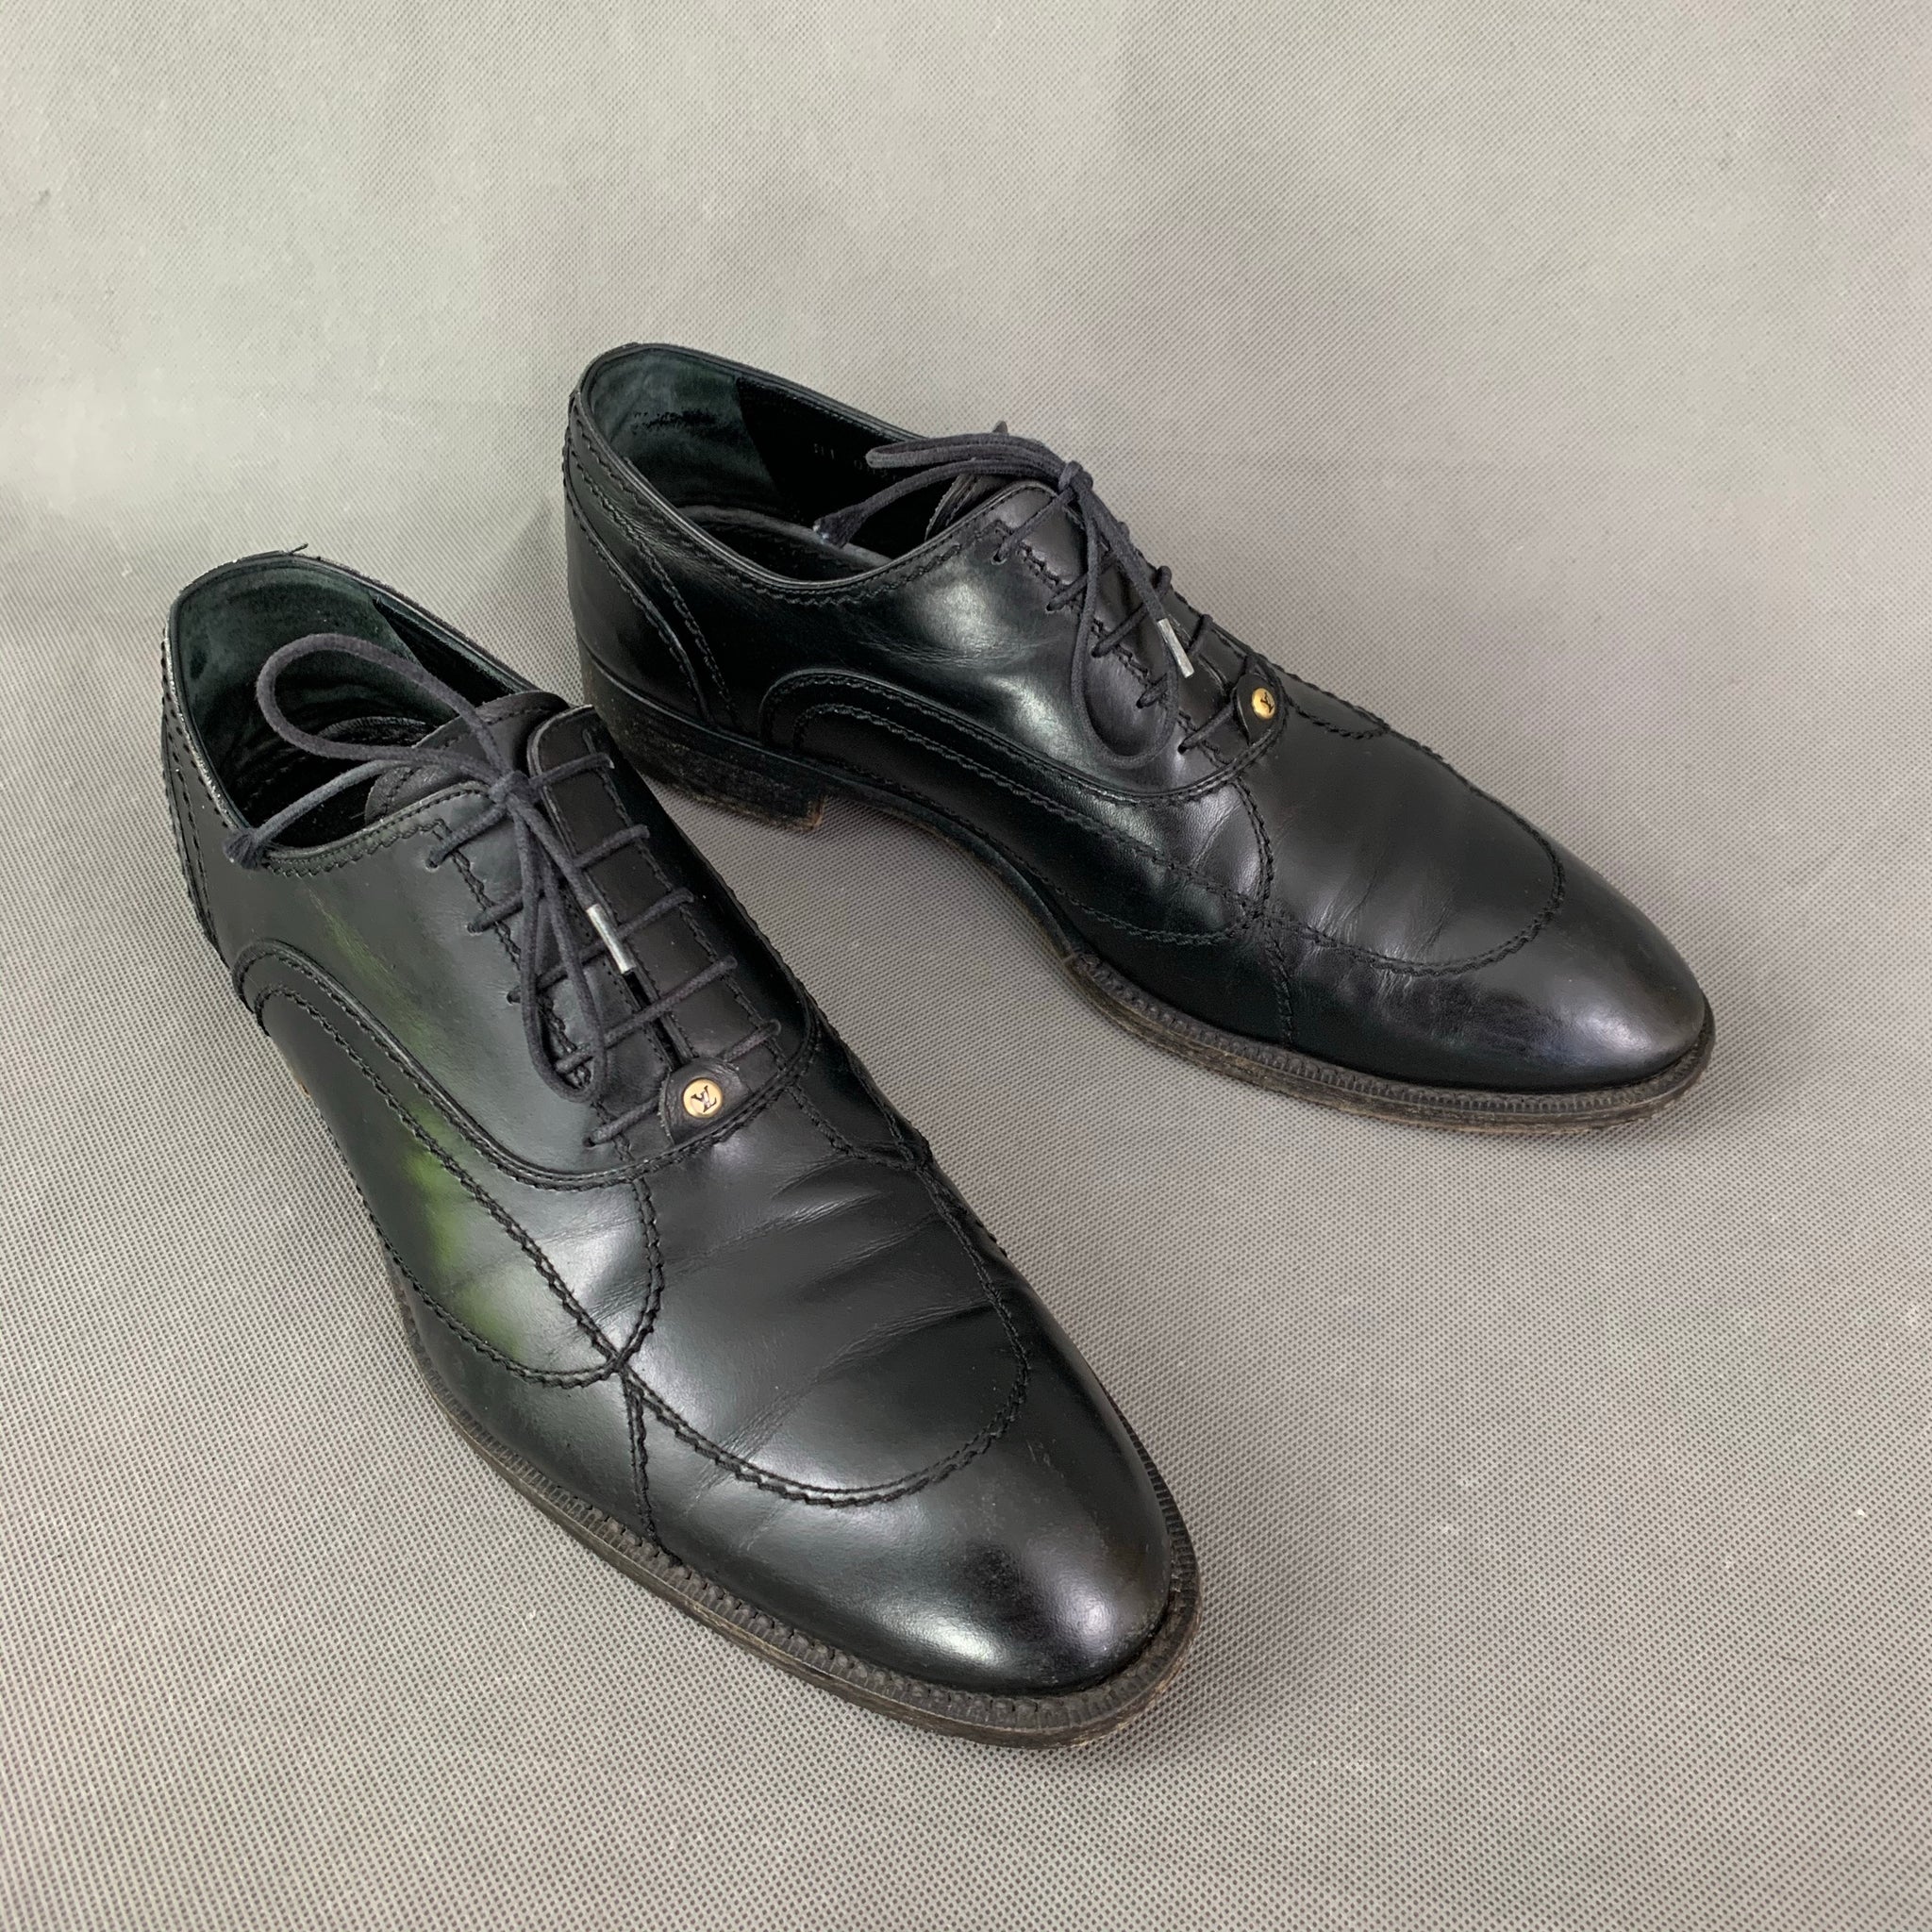 LOUIS VUITTON Mens Black Leather Derby Lace-Up Shoes - Size EU 41 - UK –  fairytale-romance.co.uk